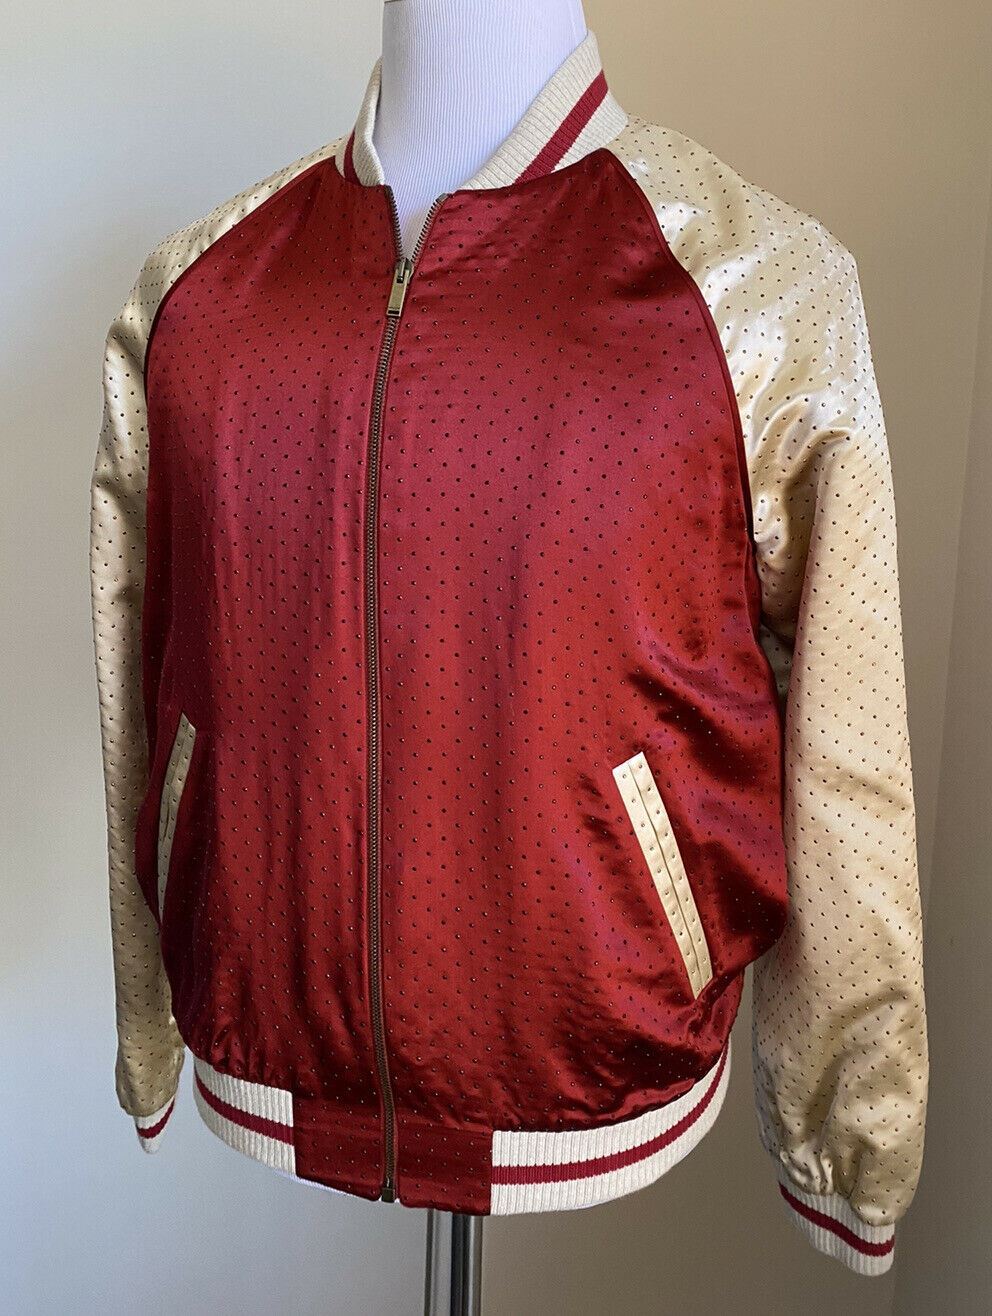 Новая куртка Saint Laurent Versity за 3990 долларов, красное/кремовое 40 США/50 ЕС Италия